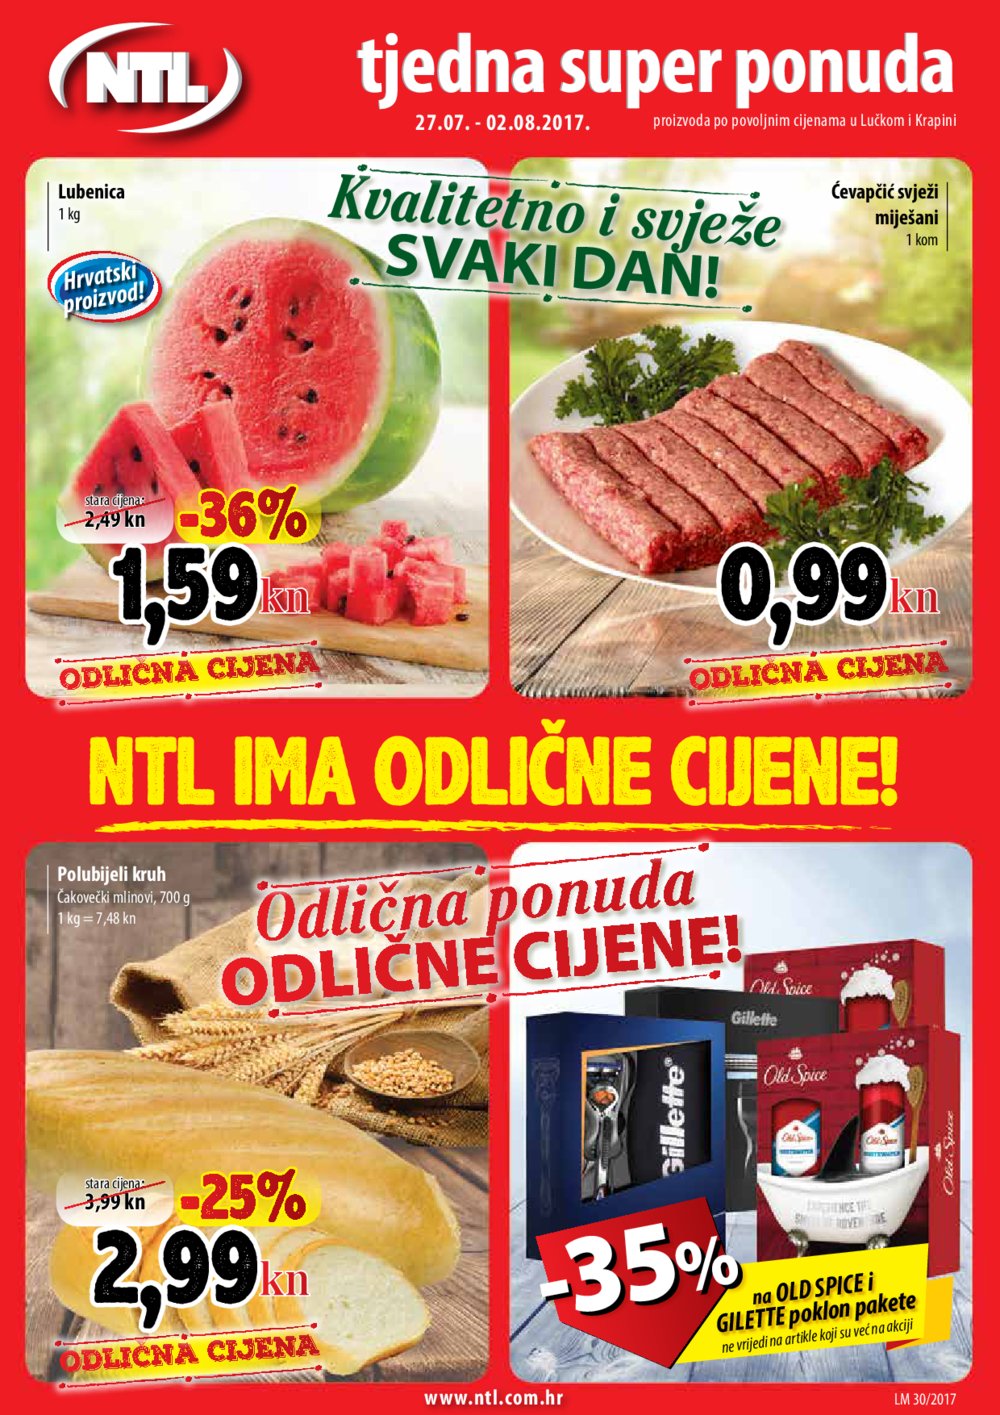 NTL katalog Tjedna super ponuda 27.07 - 02.08.2017.